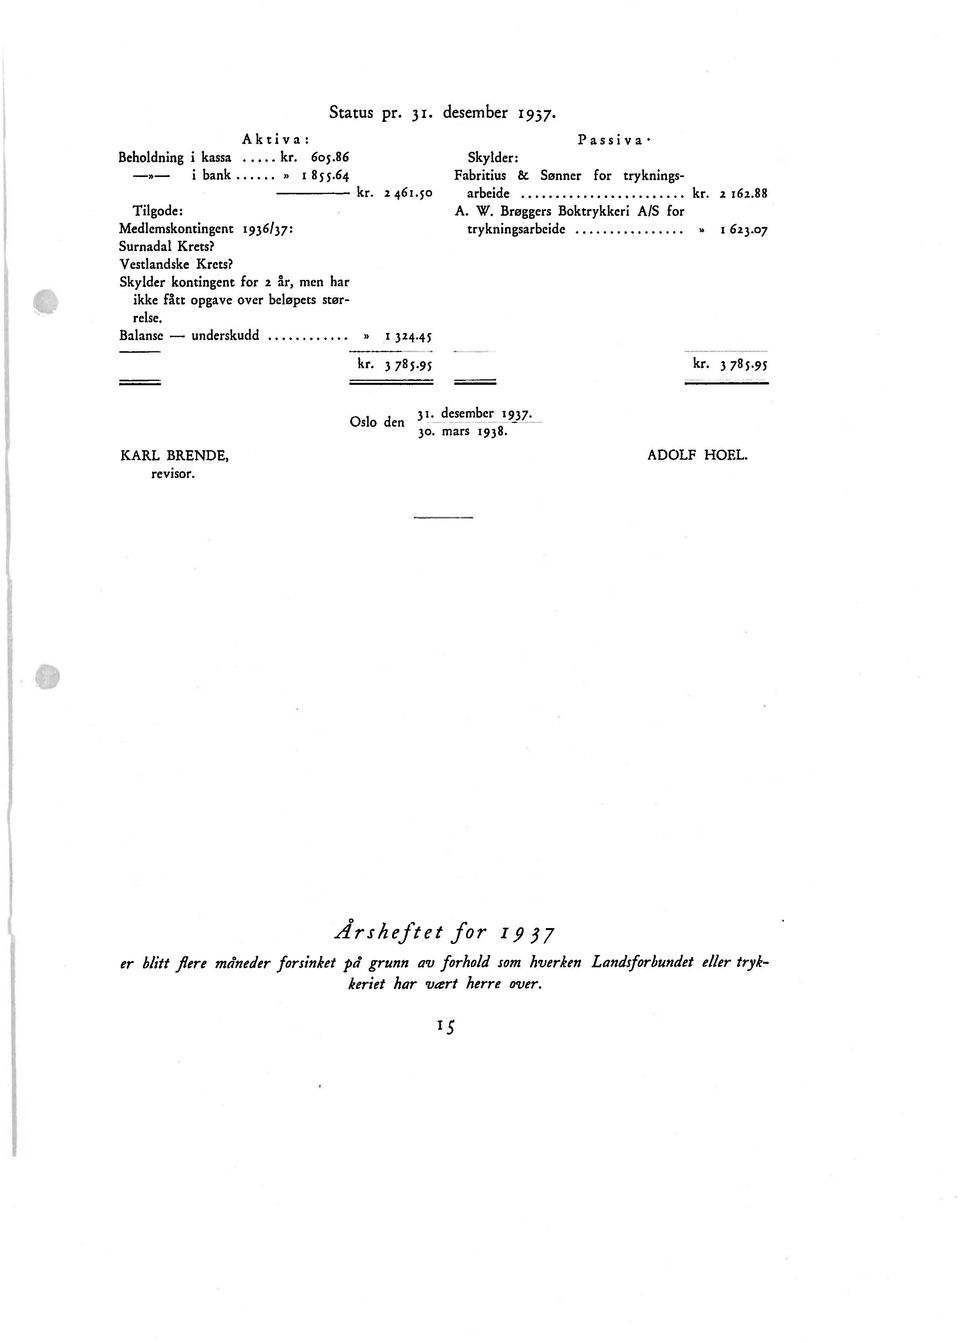 45 Passiva Skylder: Fabritius & Sønner for tryknings arbeide kr. 2 r6z.88 A. W. Brøggers Boktrykkcri A/S for trykningsarbcidc I 623.07 kr. 785.95 kr. 3785.